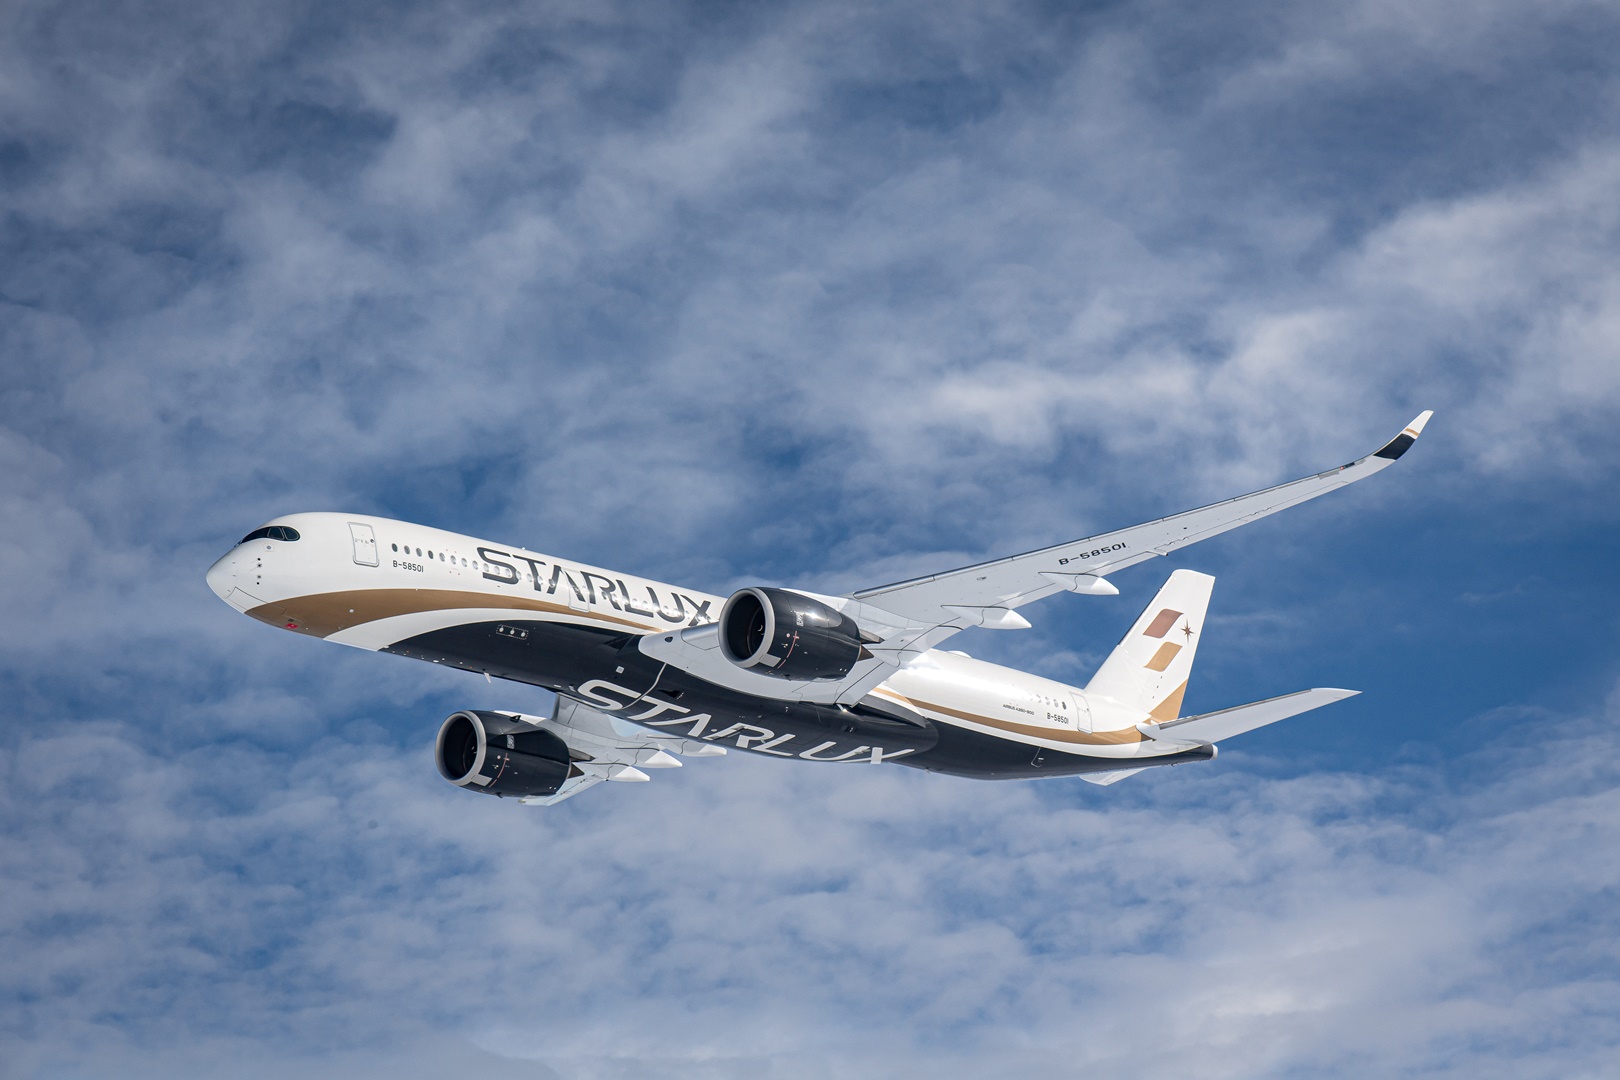 星宇航空台北-洛杉磯航線訂於 4 月 26 日開航，將以全新 Airbus 廣體客機 A350 執飛